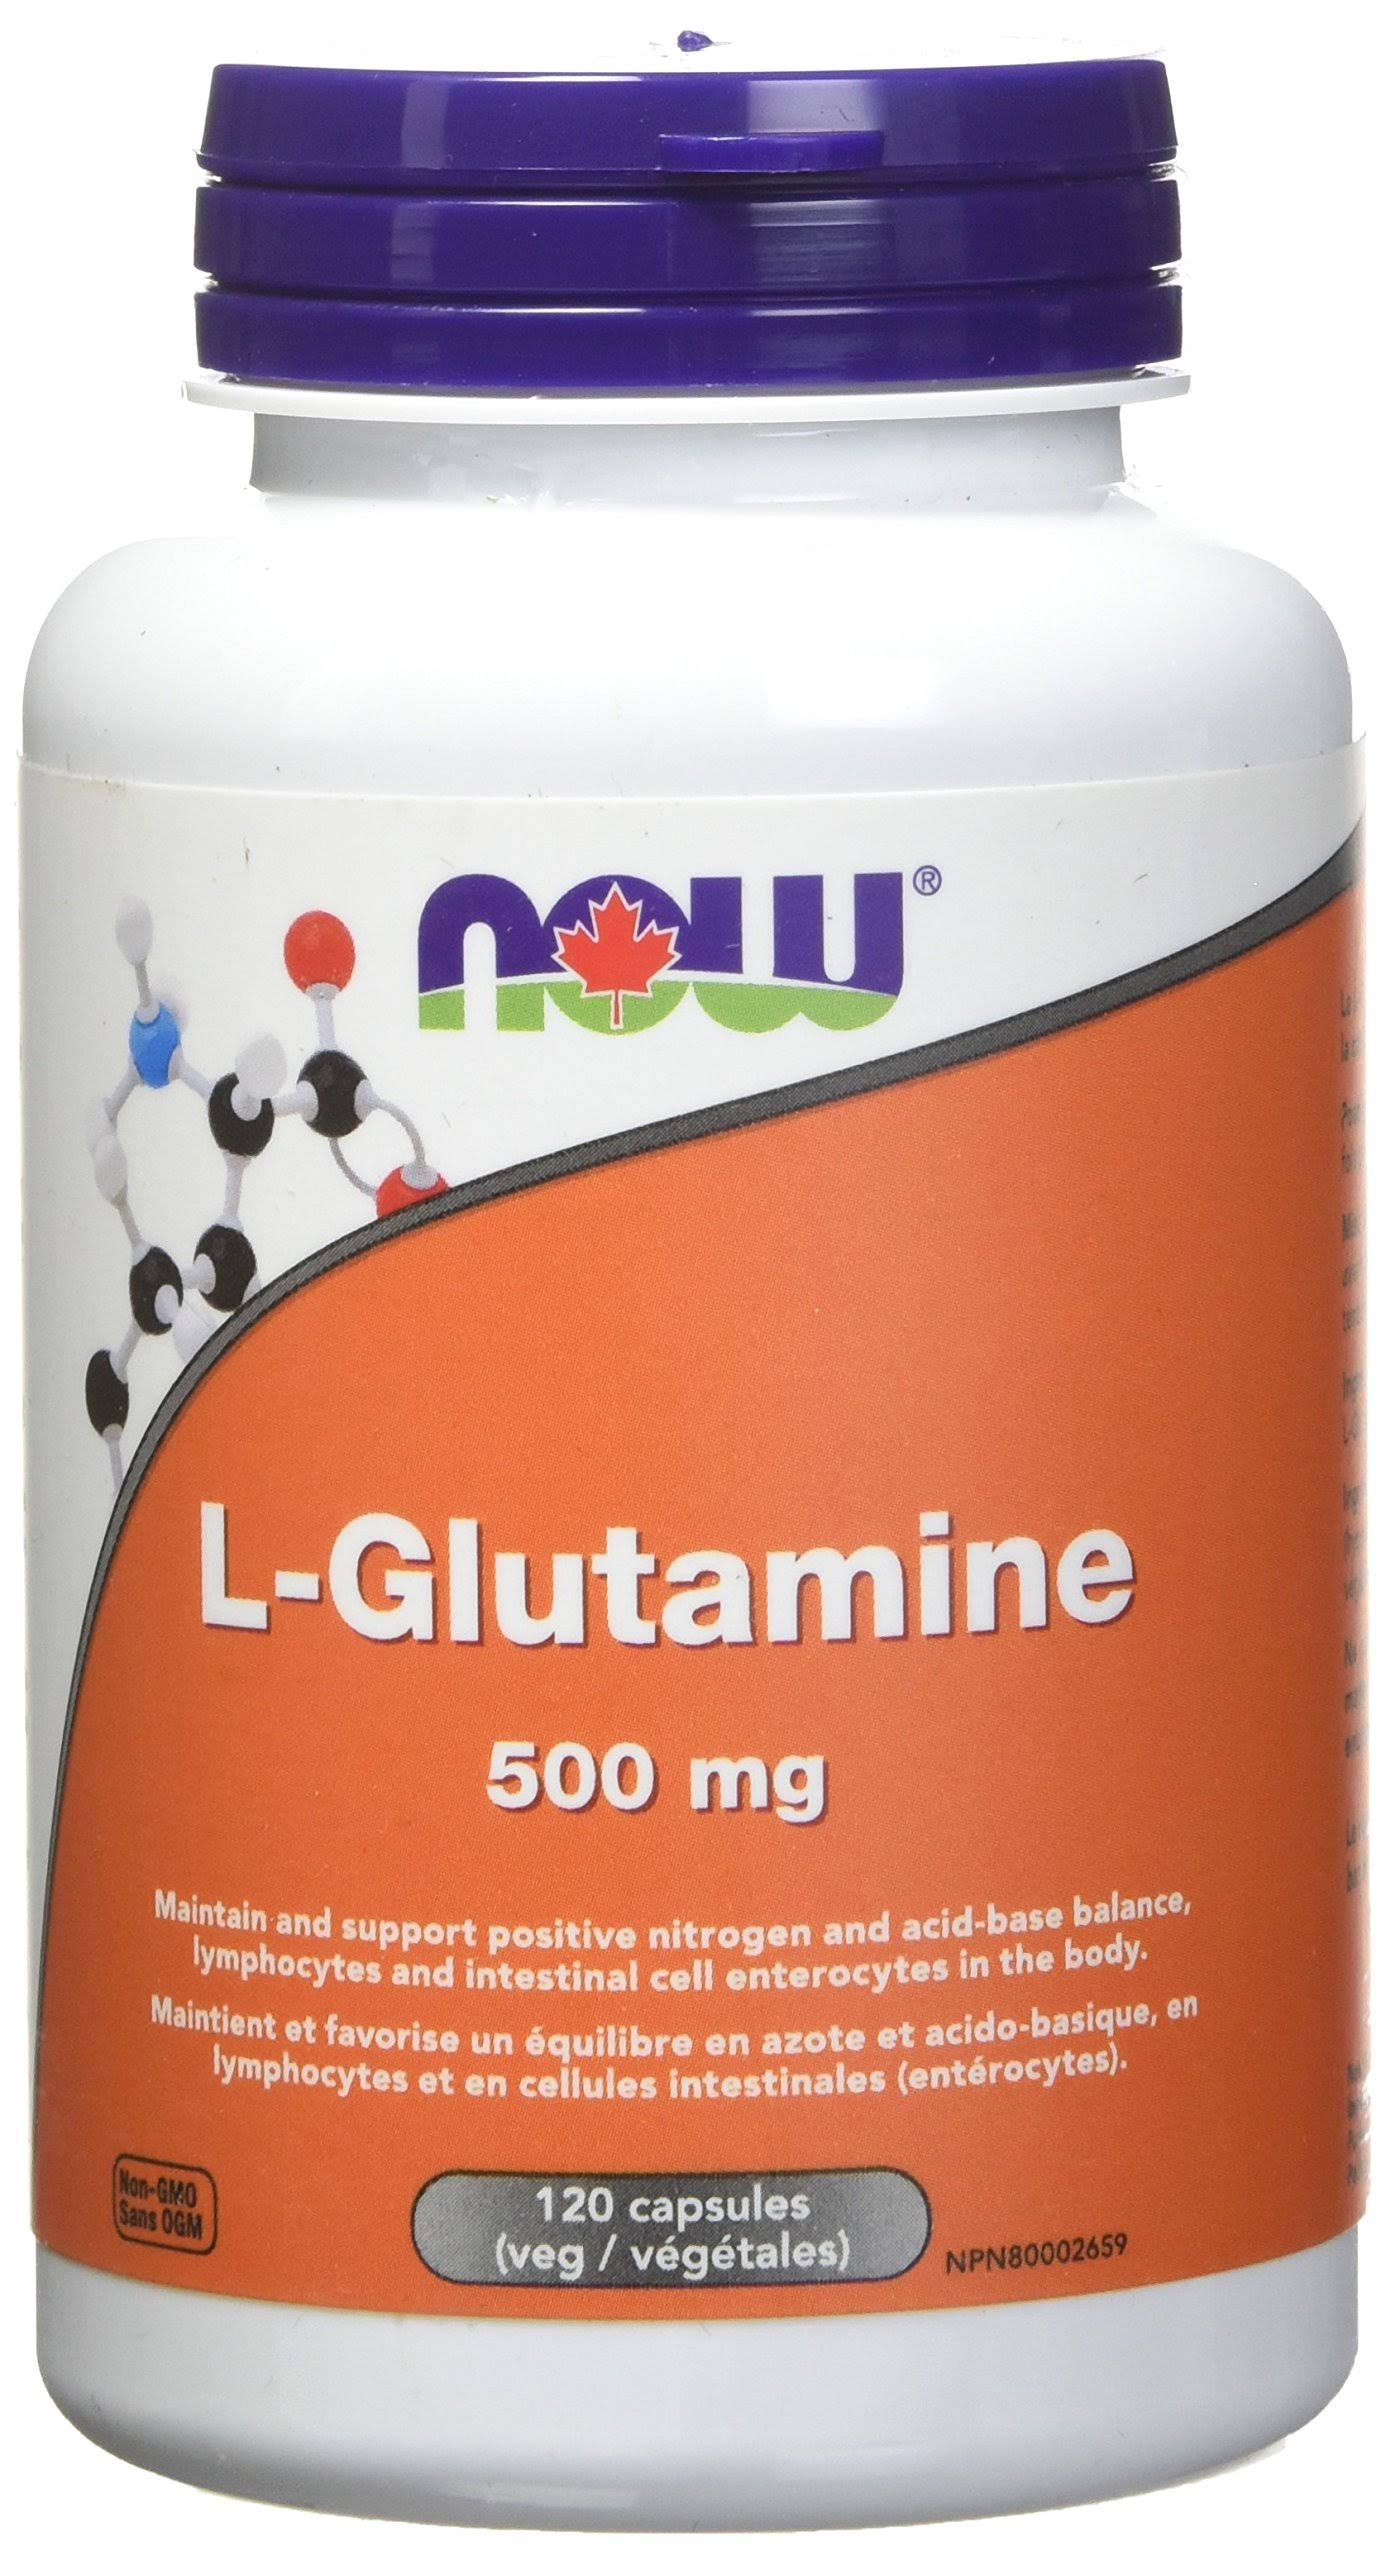 Now L-glutamine Supplement - 120ct